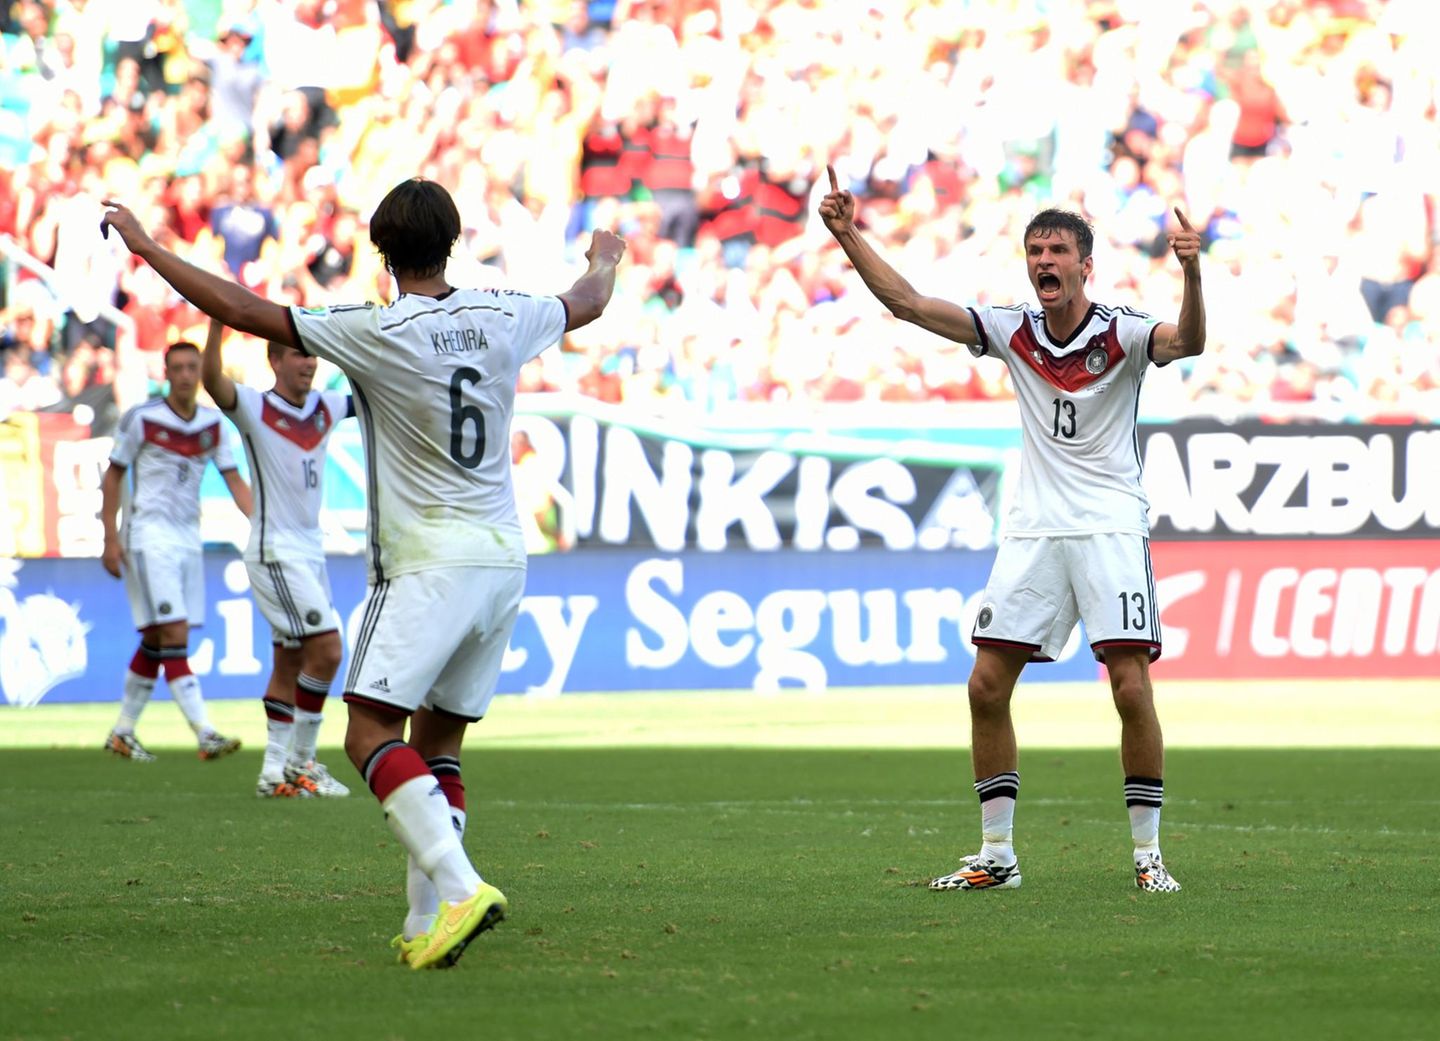 Thomas Müller hat bereits nach dem ersten Spiel der deutschen Mannschaft beste Chancen Torschützenkönig der WM zu werden.